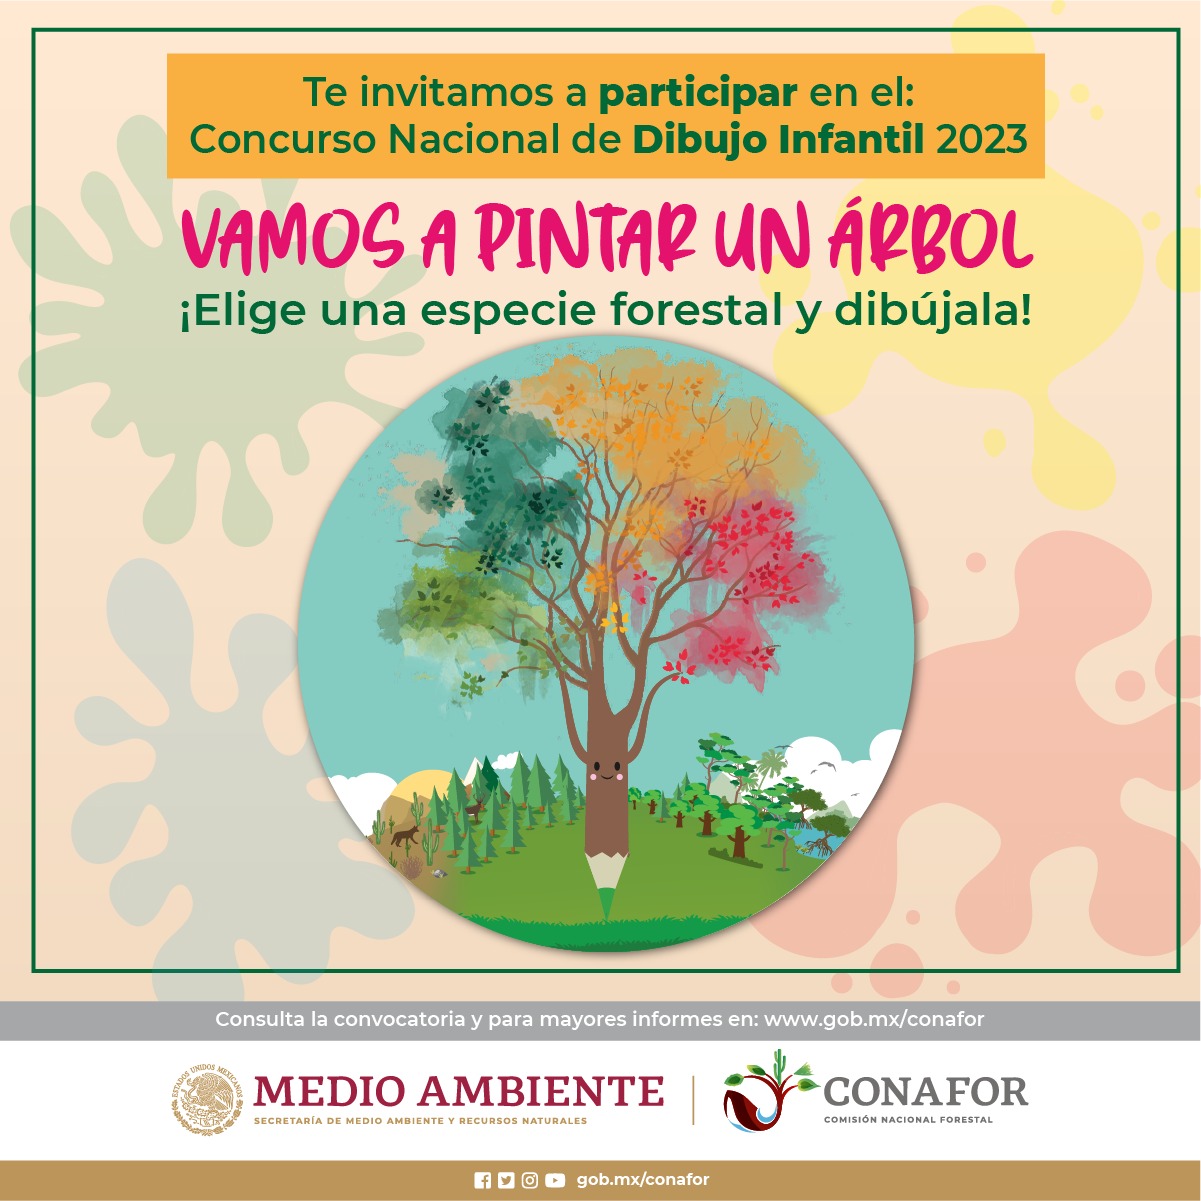 Conafor invita al concurso nacional de dibujo infantil “Vamos a pintar un árbol 2023”